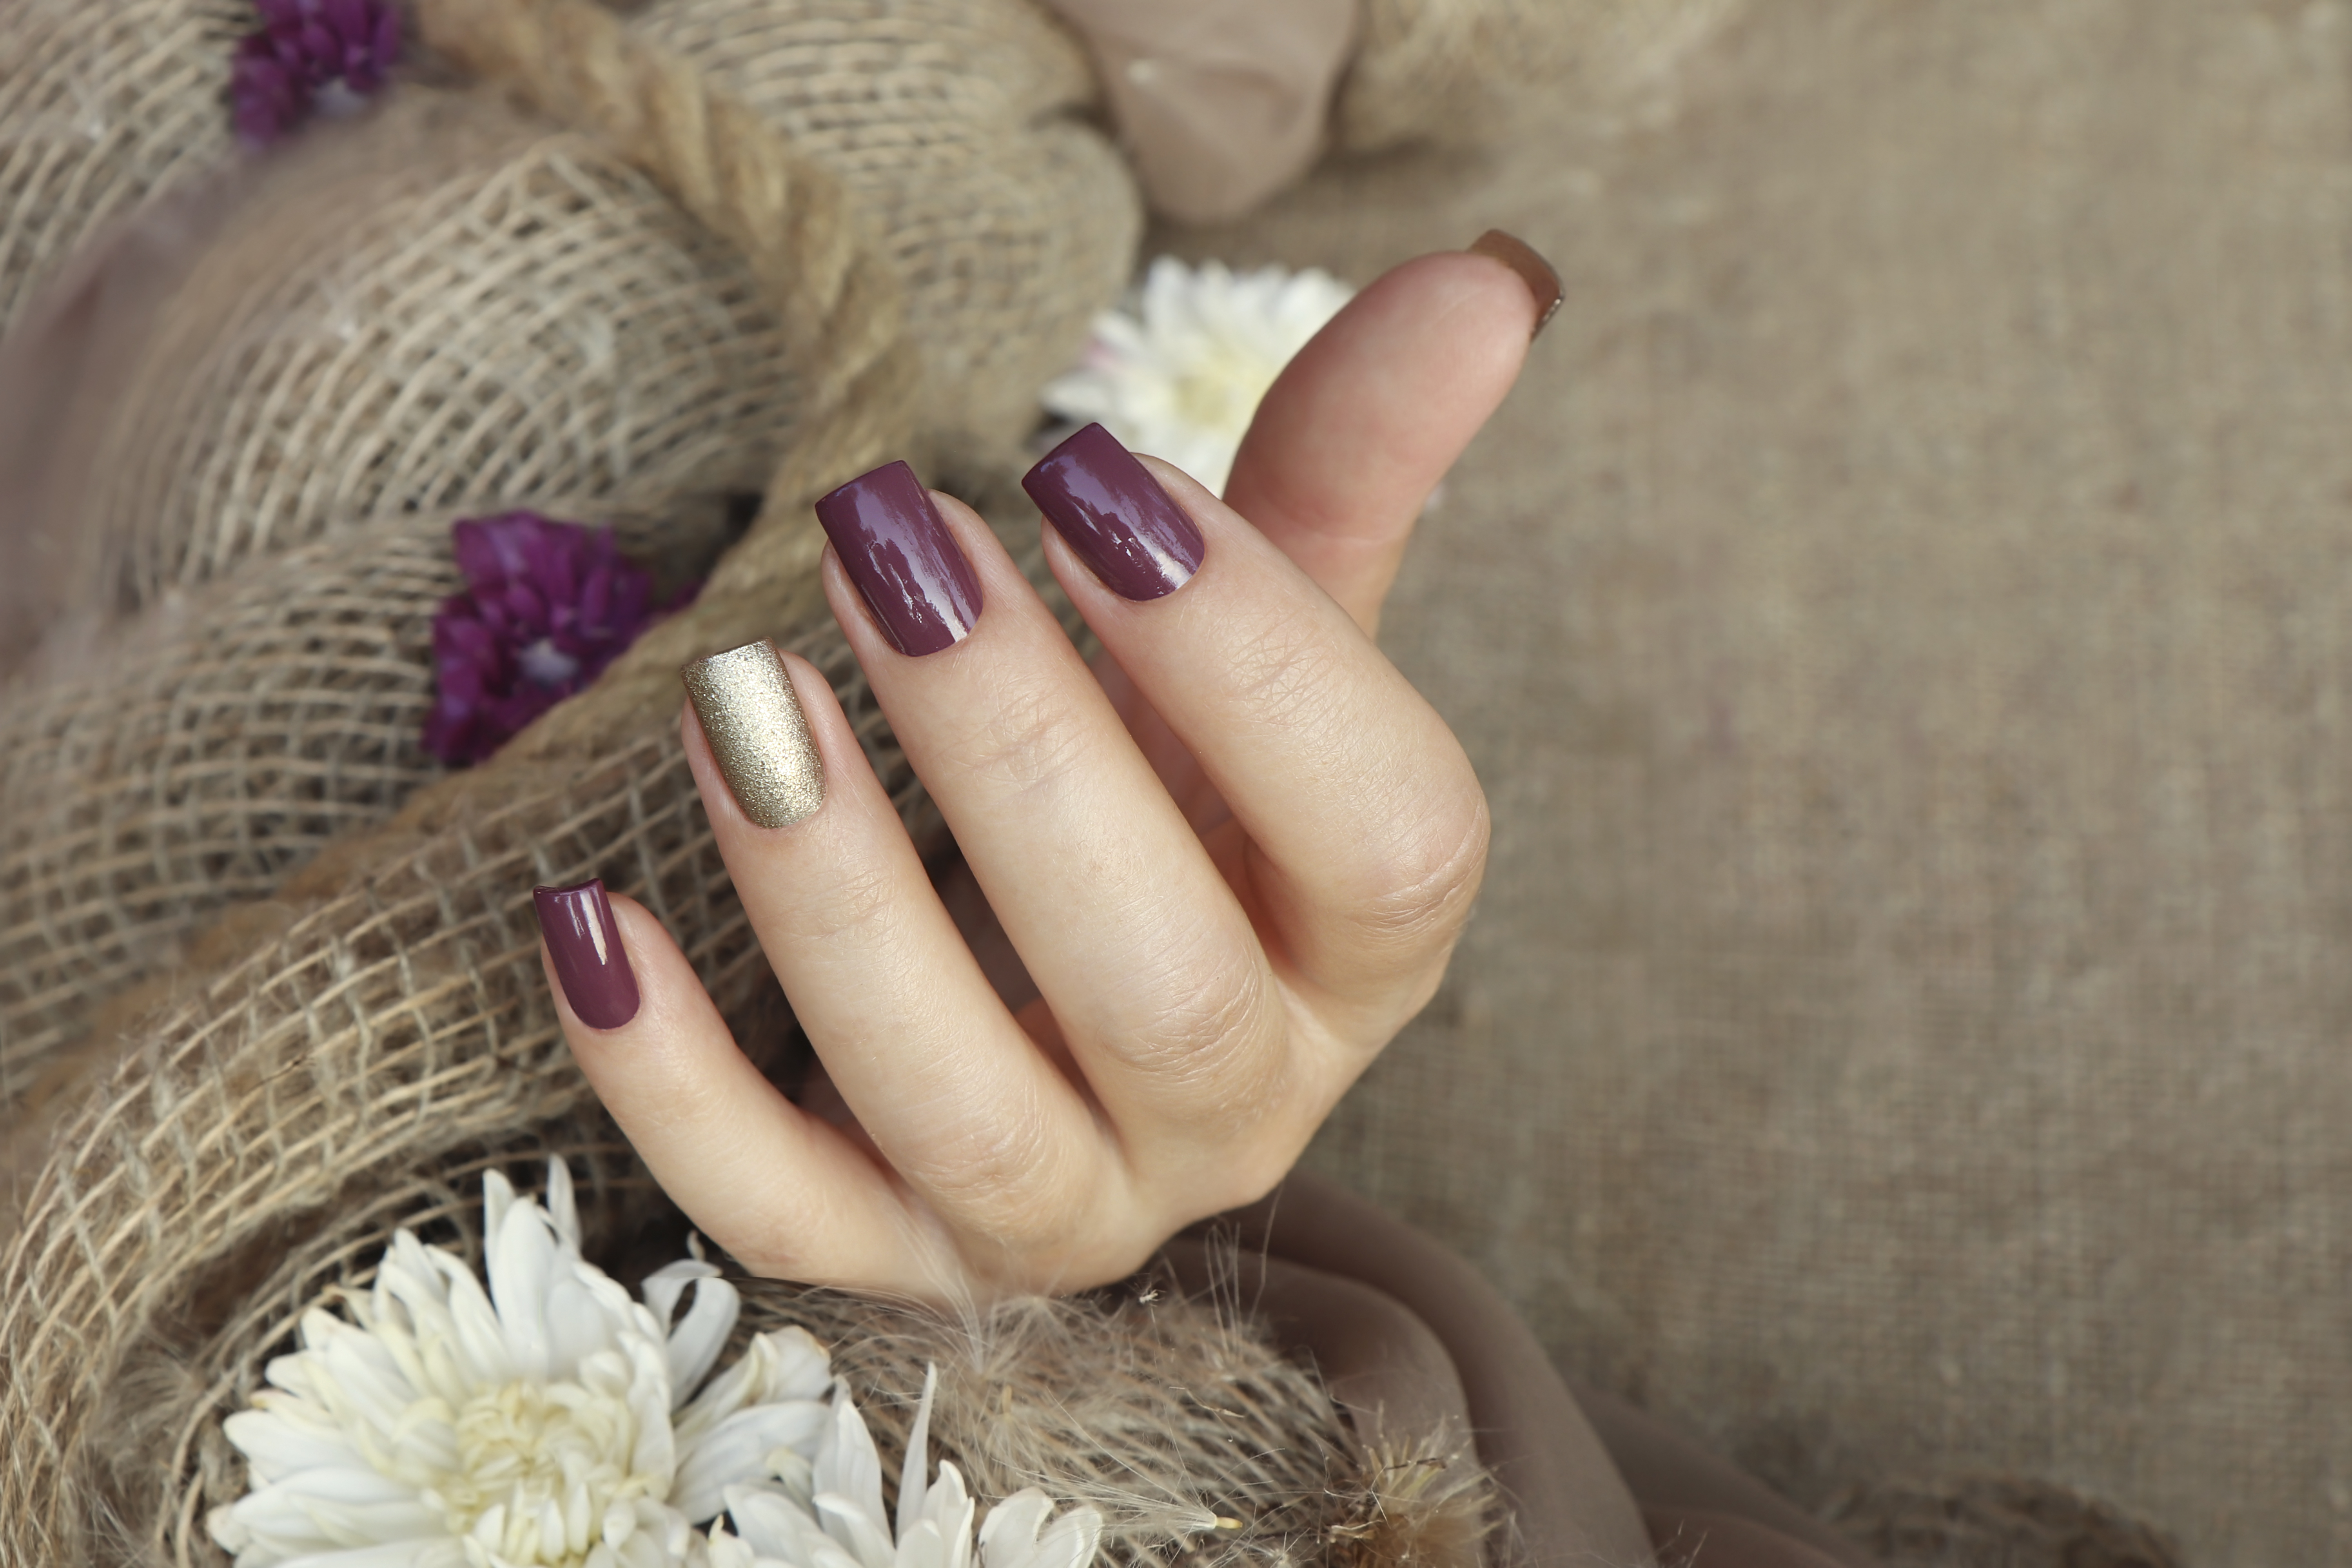 Eine weibliche Hand mit pflaumen- und goldfarbenen Nägeln | Quelle: Getty Images